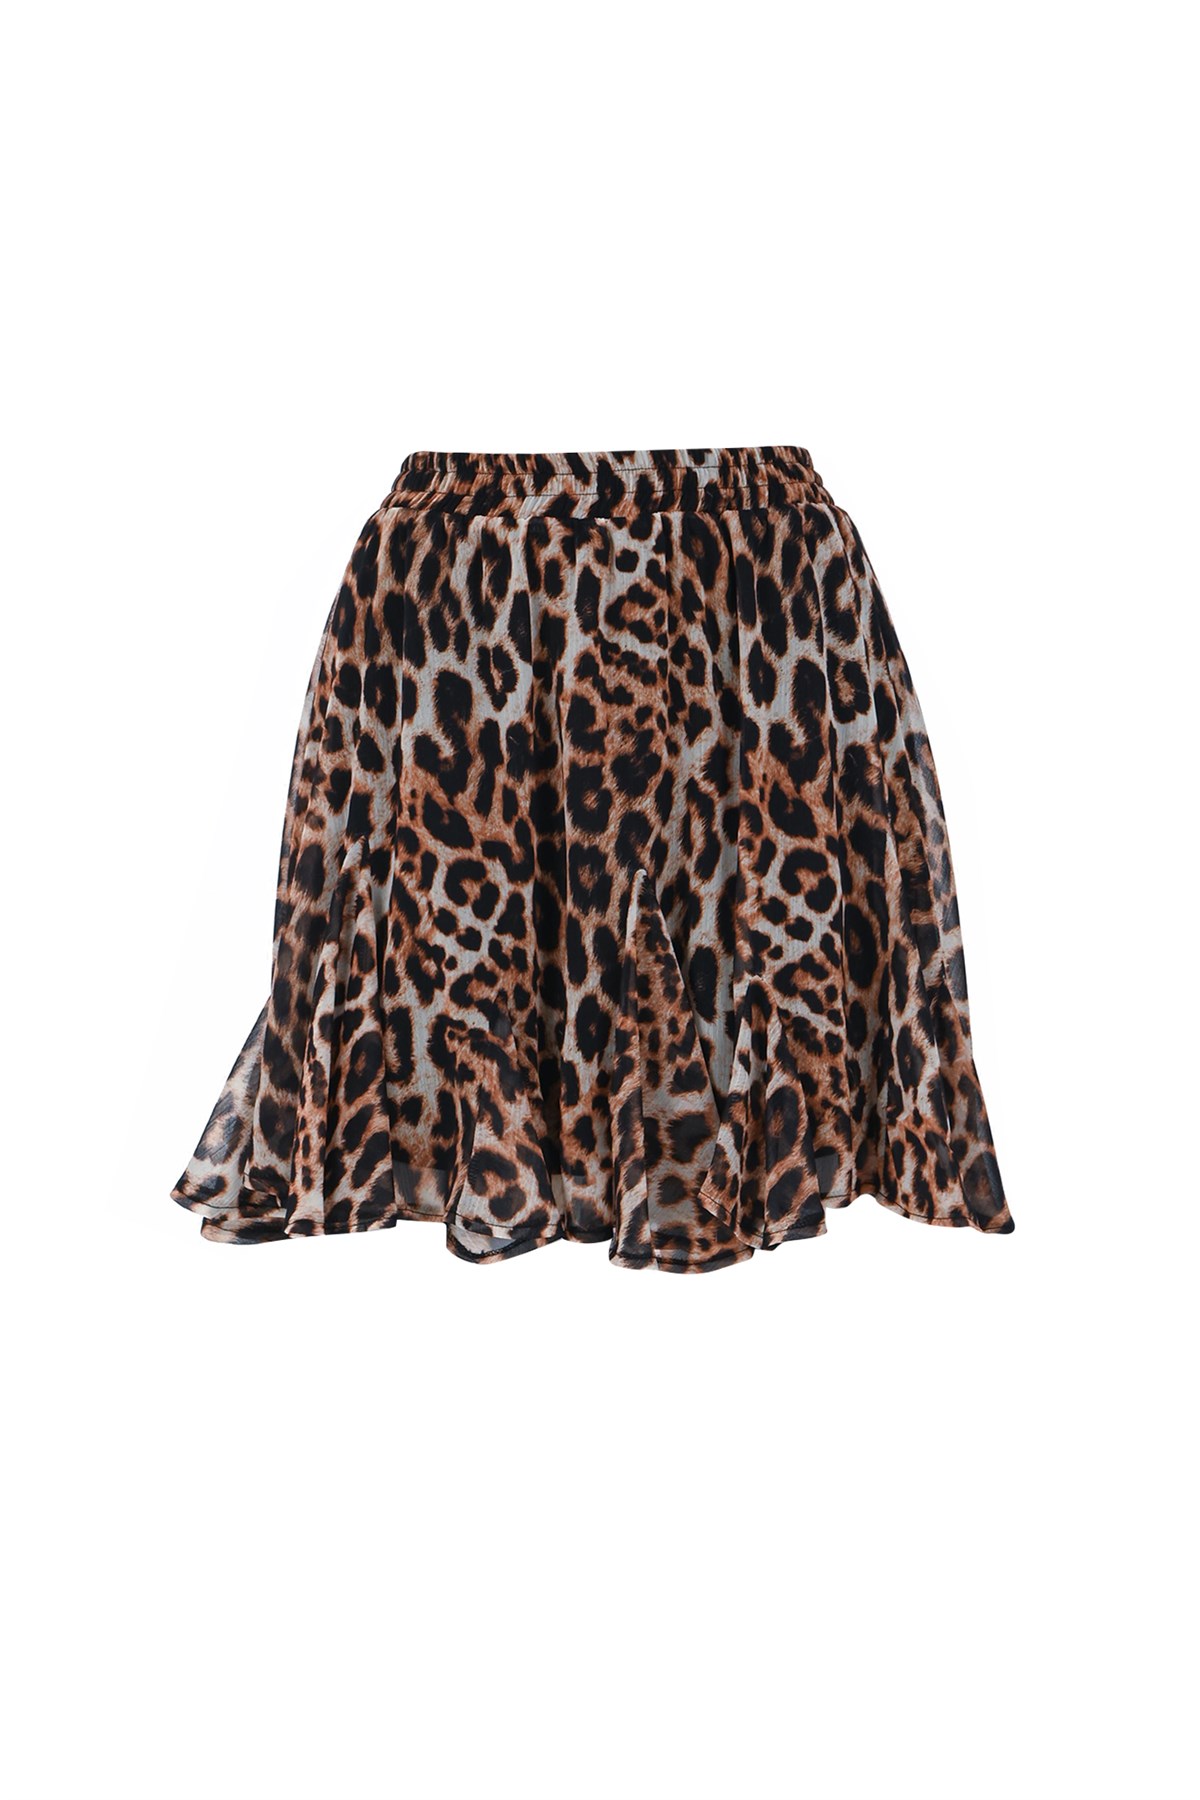 Leopard print chiffon skirt